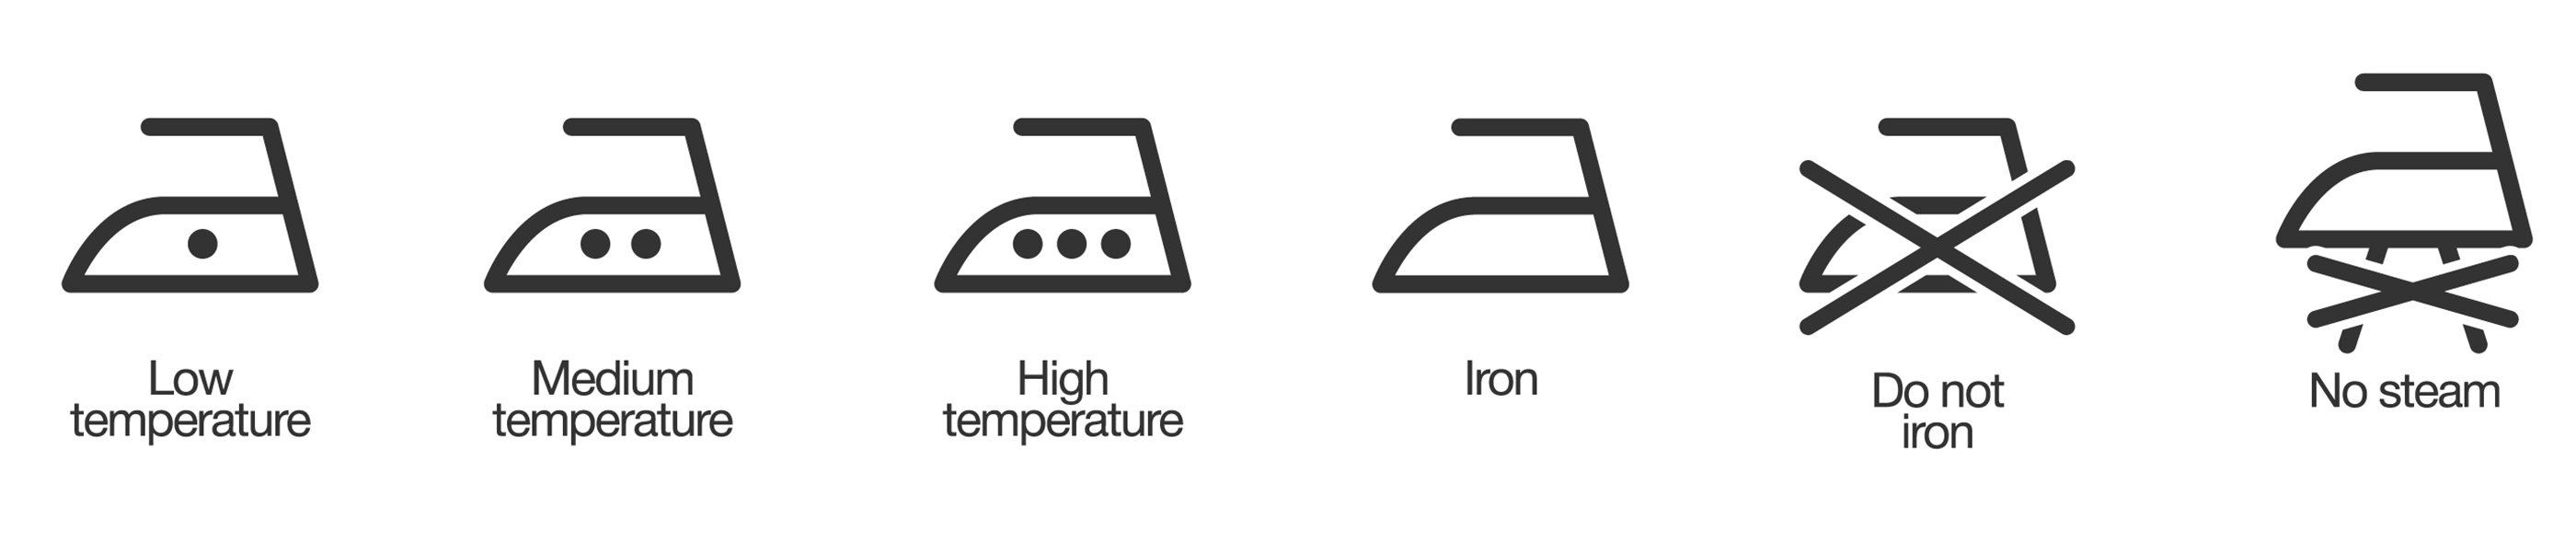 iron icons on the laundry symbols chart